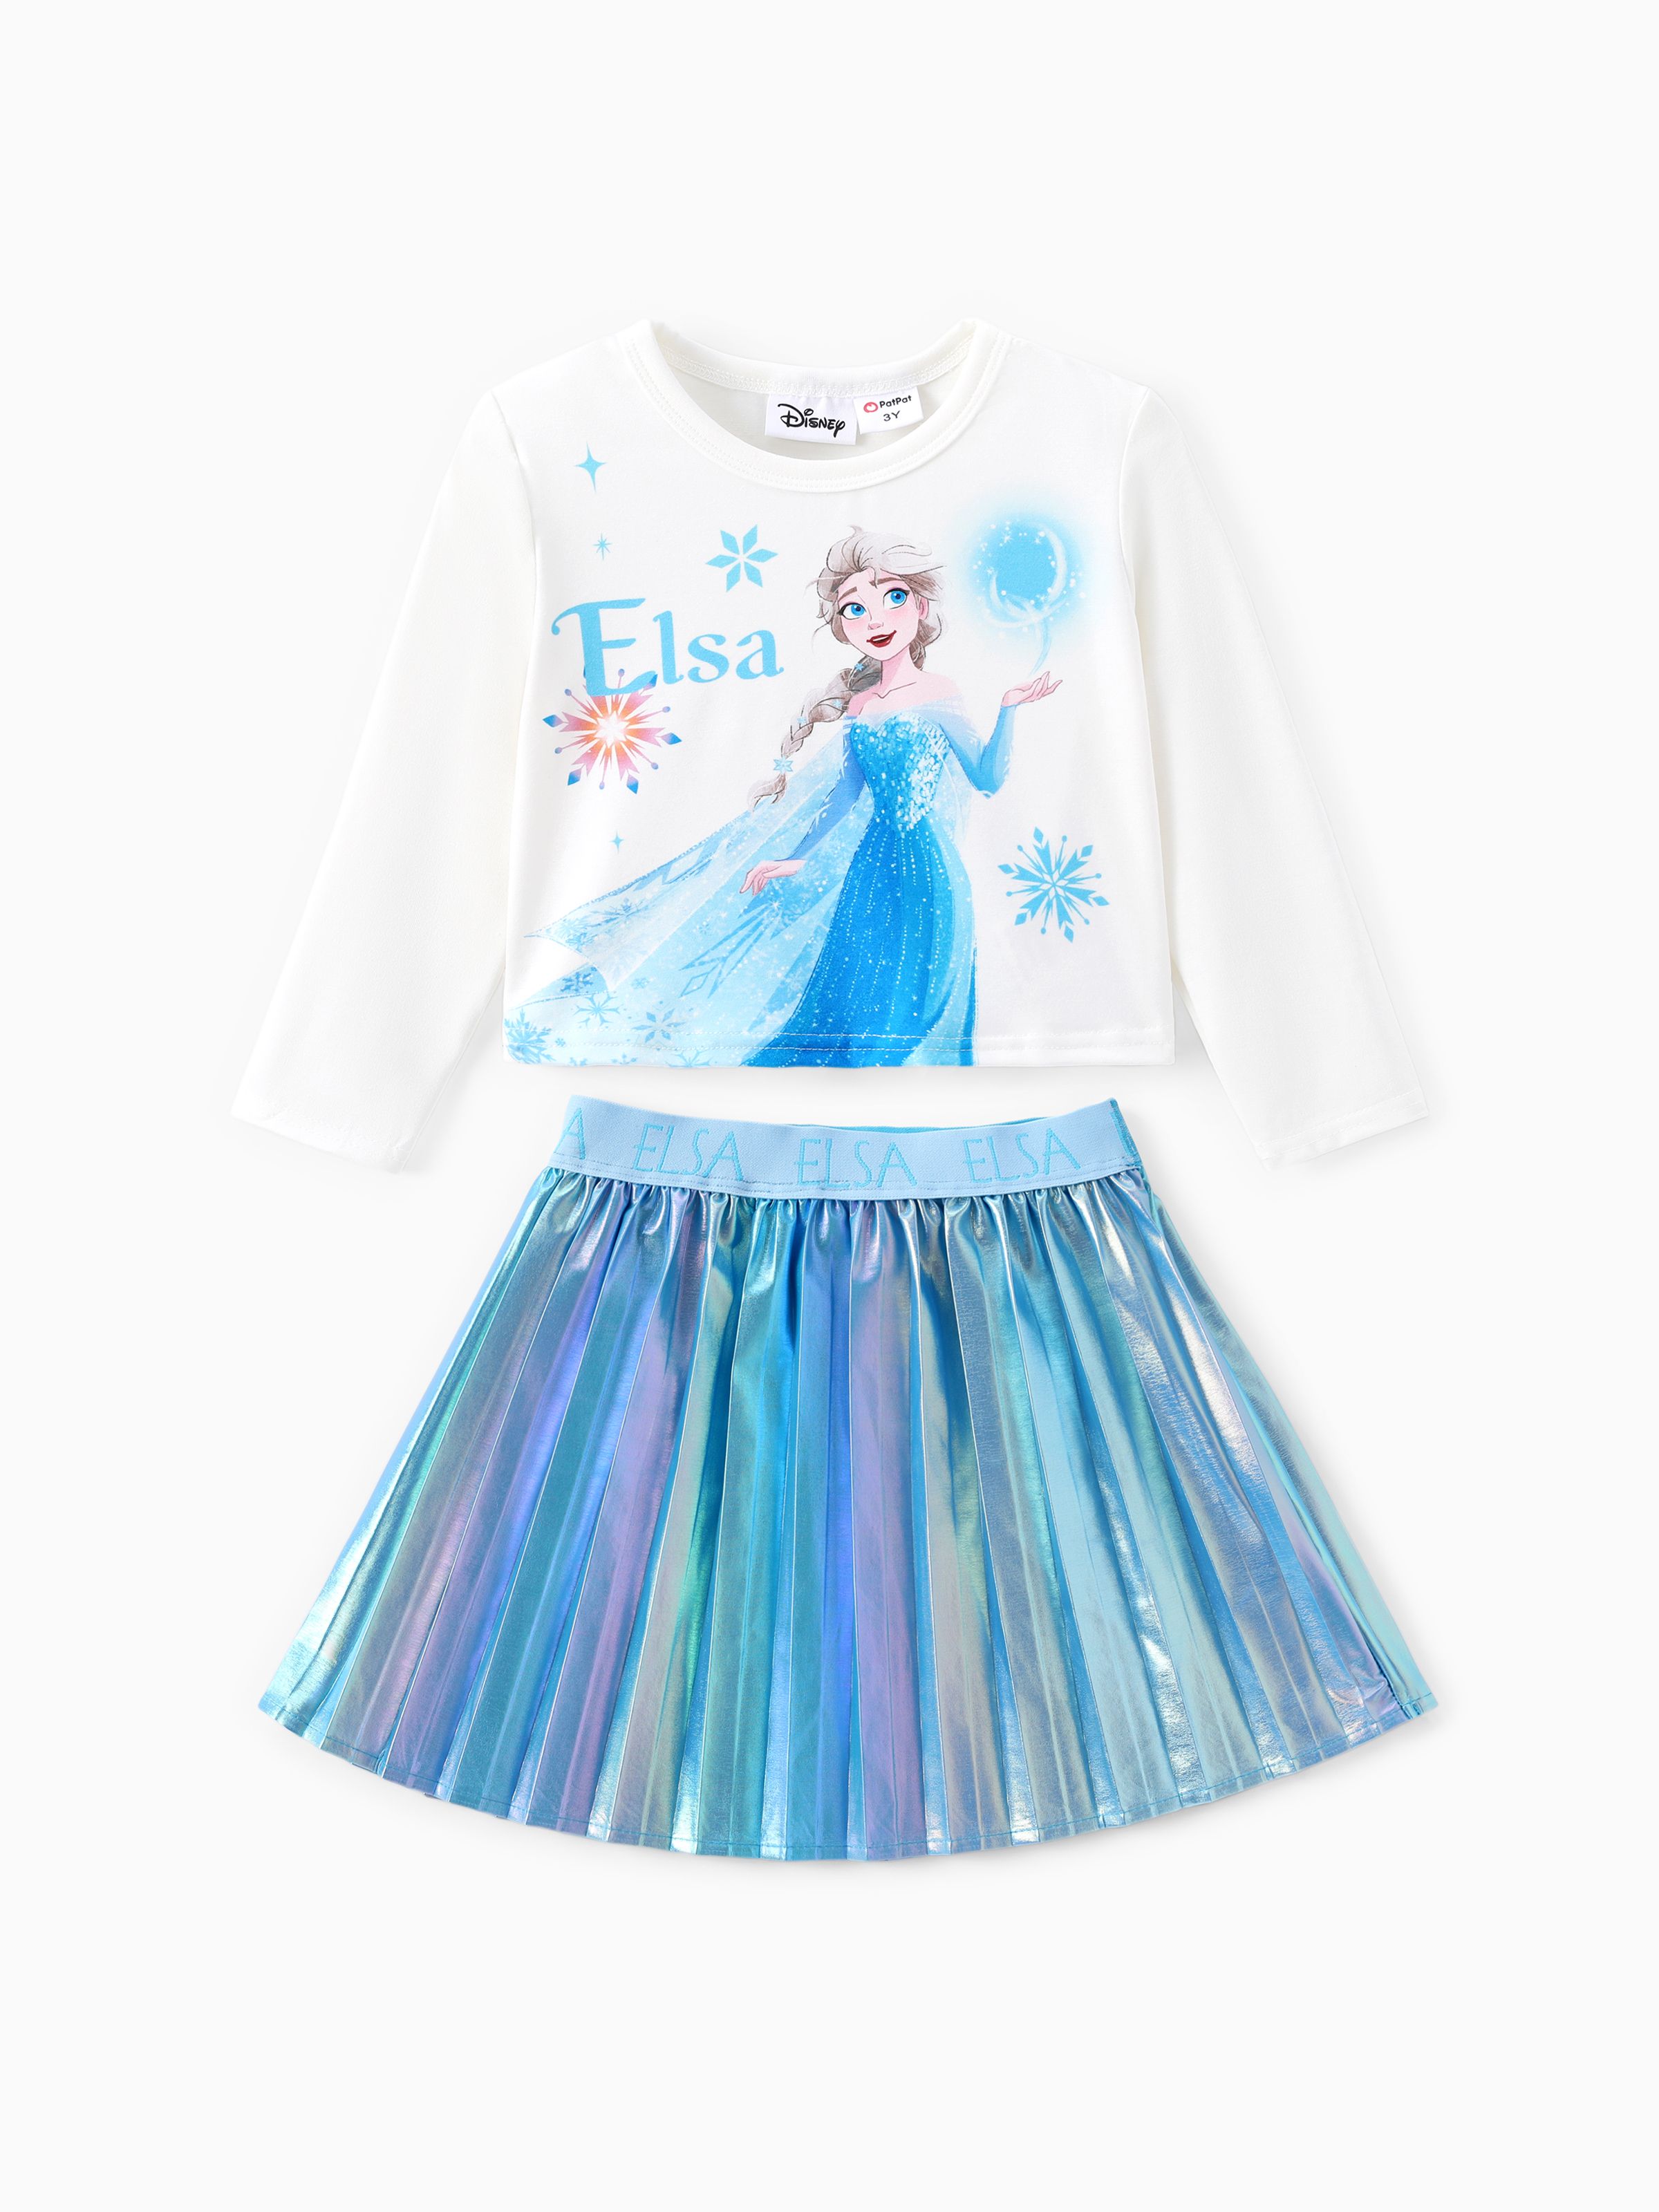 

Disney Frozen Toddler Girls Elsa 2pcs Naia™ Sweatshirt with Metallic Skirt Set